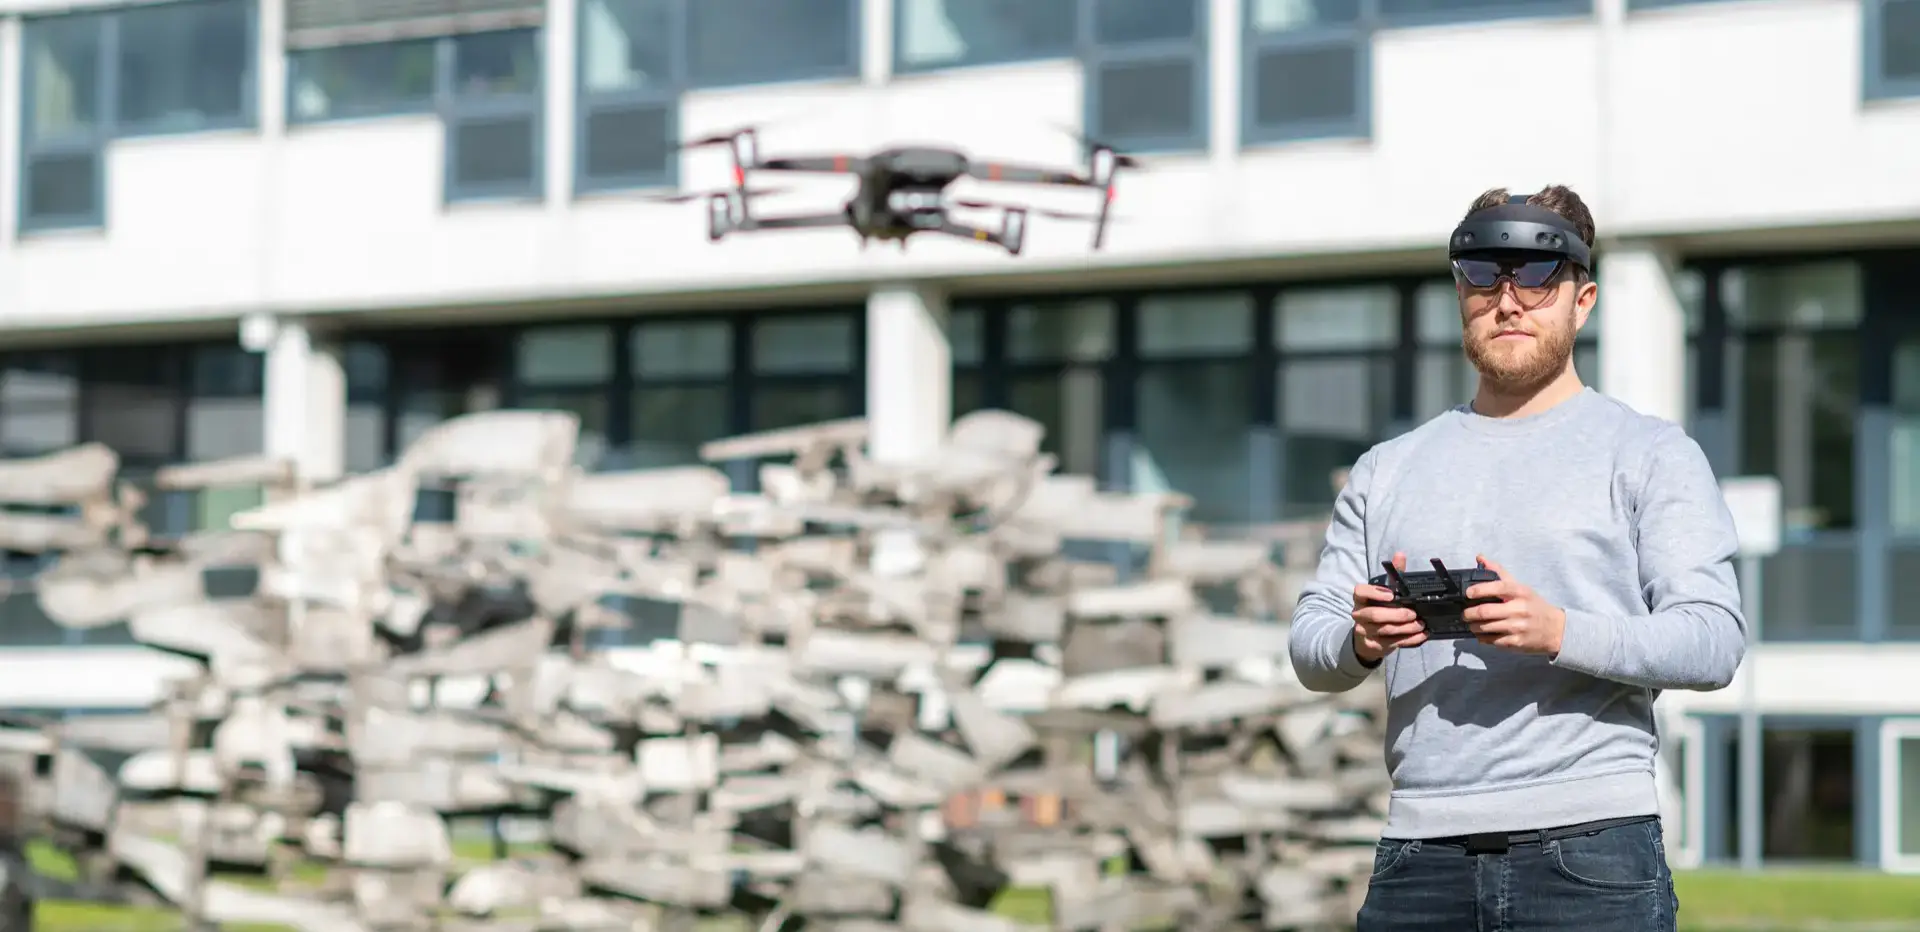 Studierender fliegt einen Roboter mit einer Virtuell Reality Brille